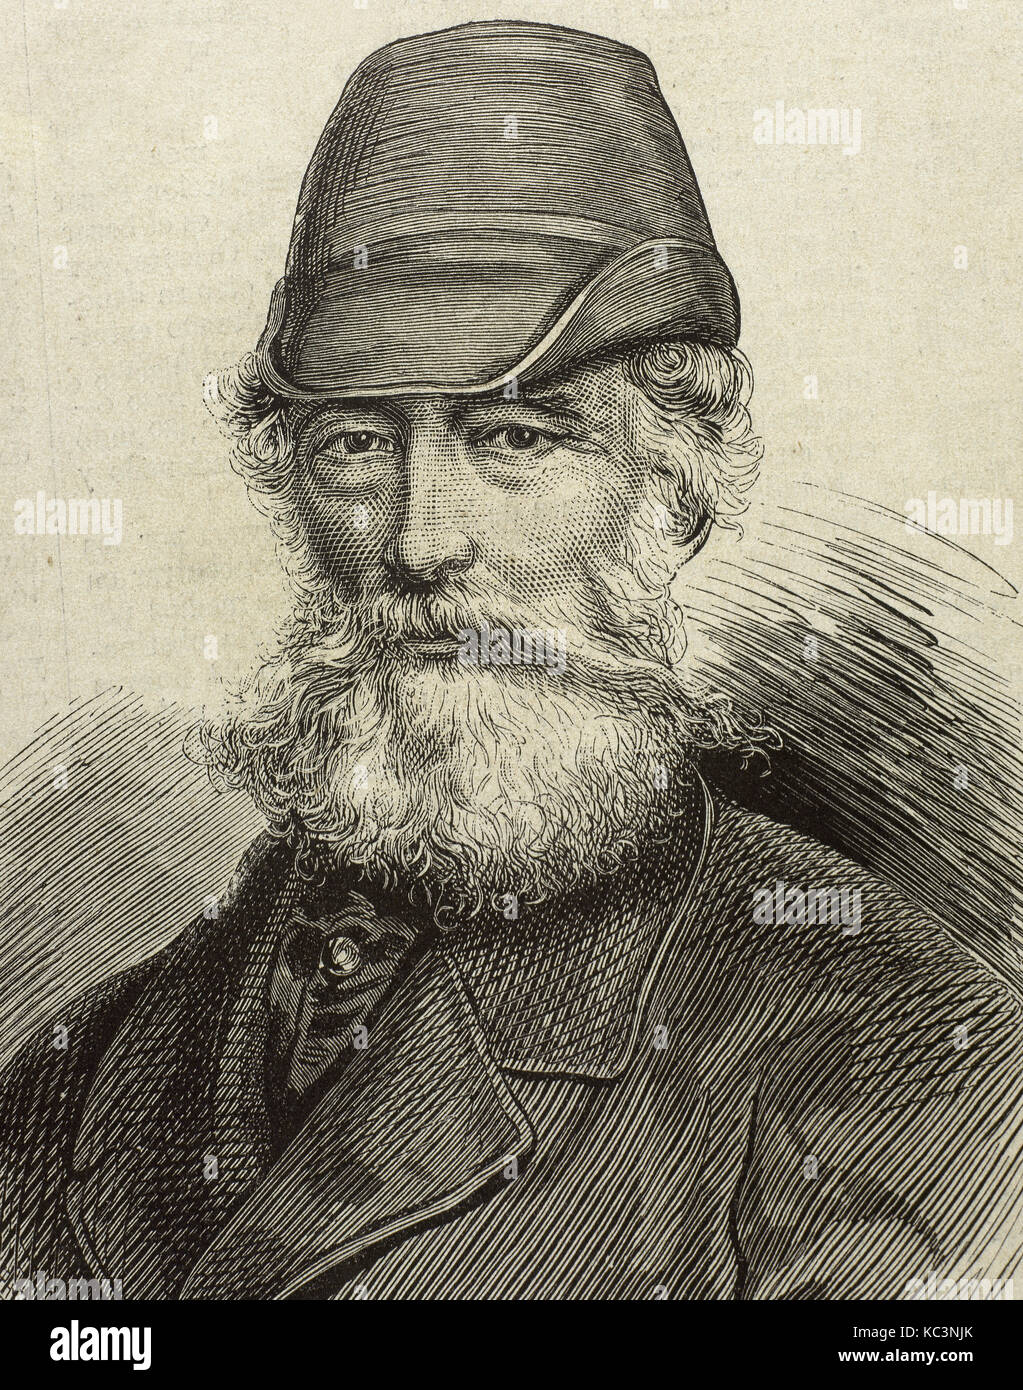 Alfred Krupp (1812-1887). German industrialist. Portrait. Engraving. 'La Ilustracion Espanola y Americana', 1878. Stock Photo